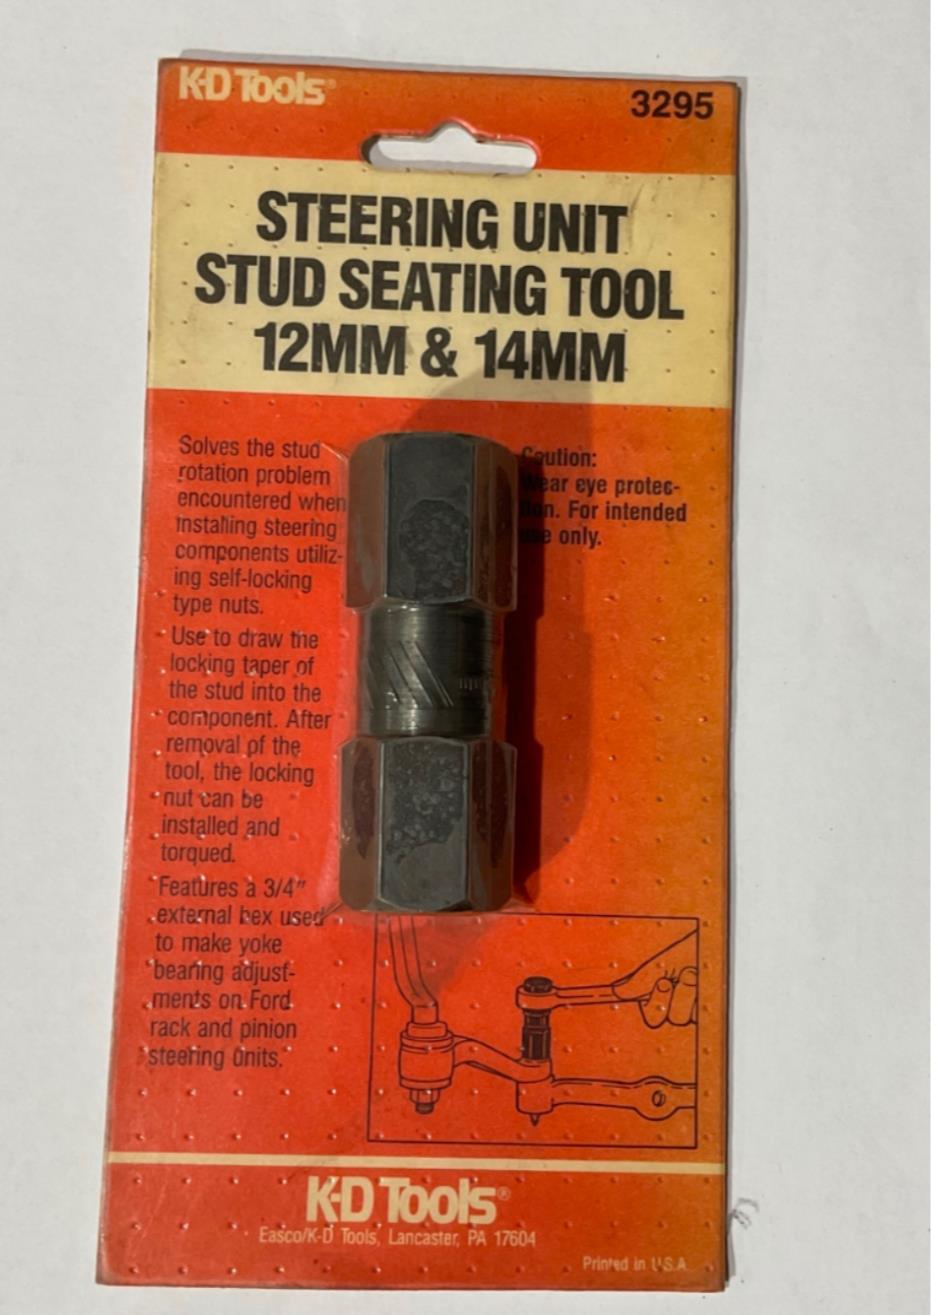 KD Tools 3295 Steering Unit Stud Seating Tool 12mm & 14mm #39